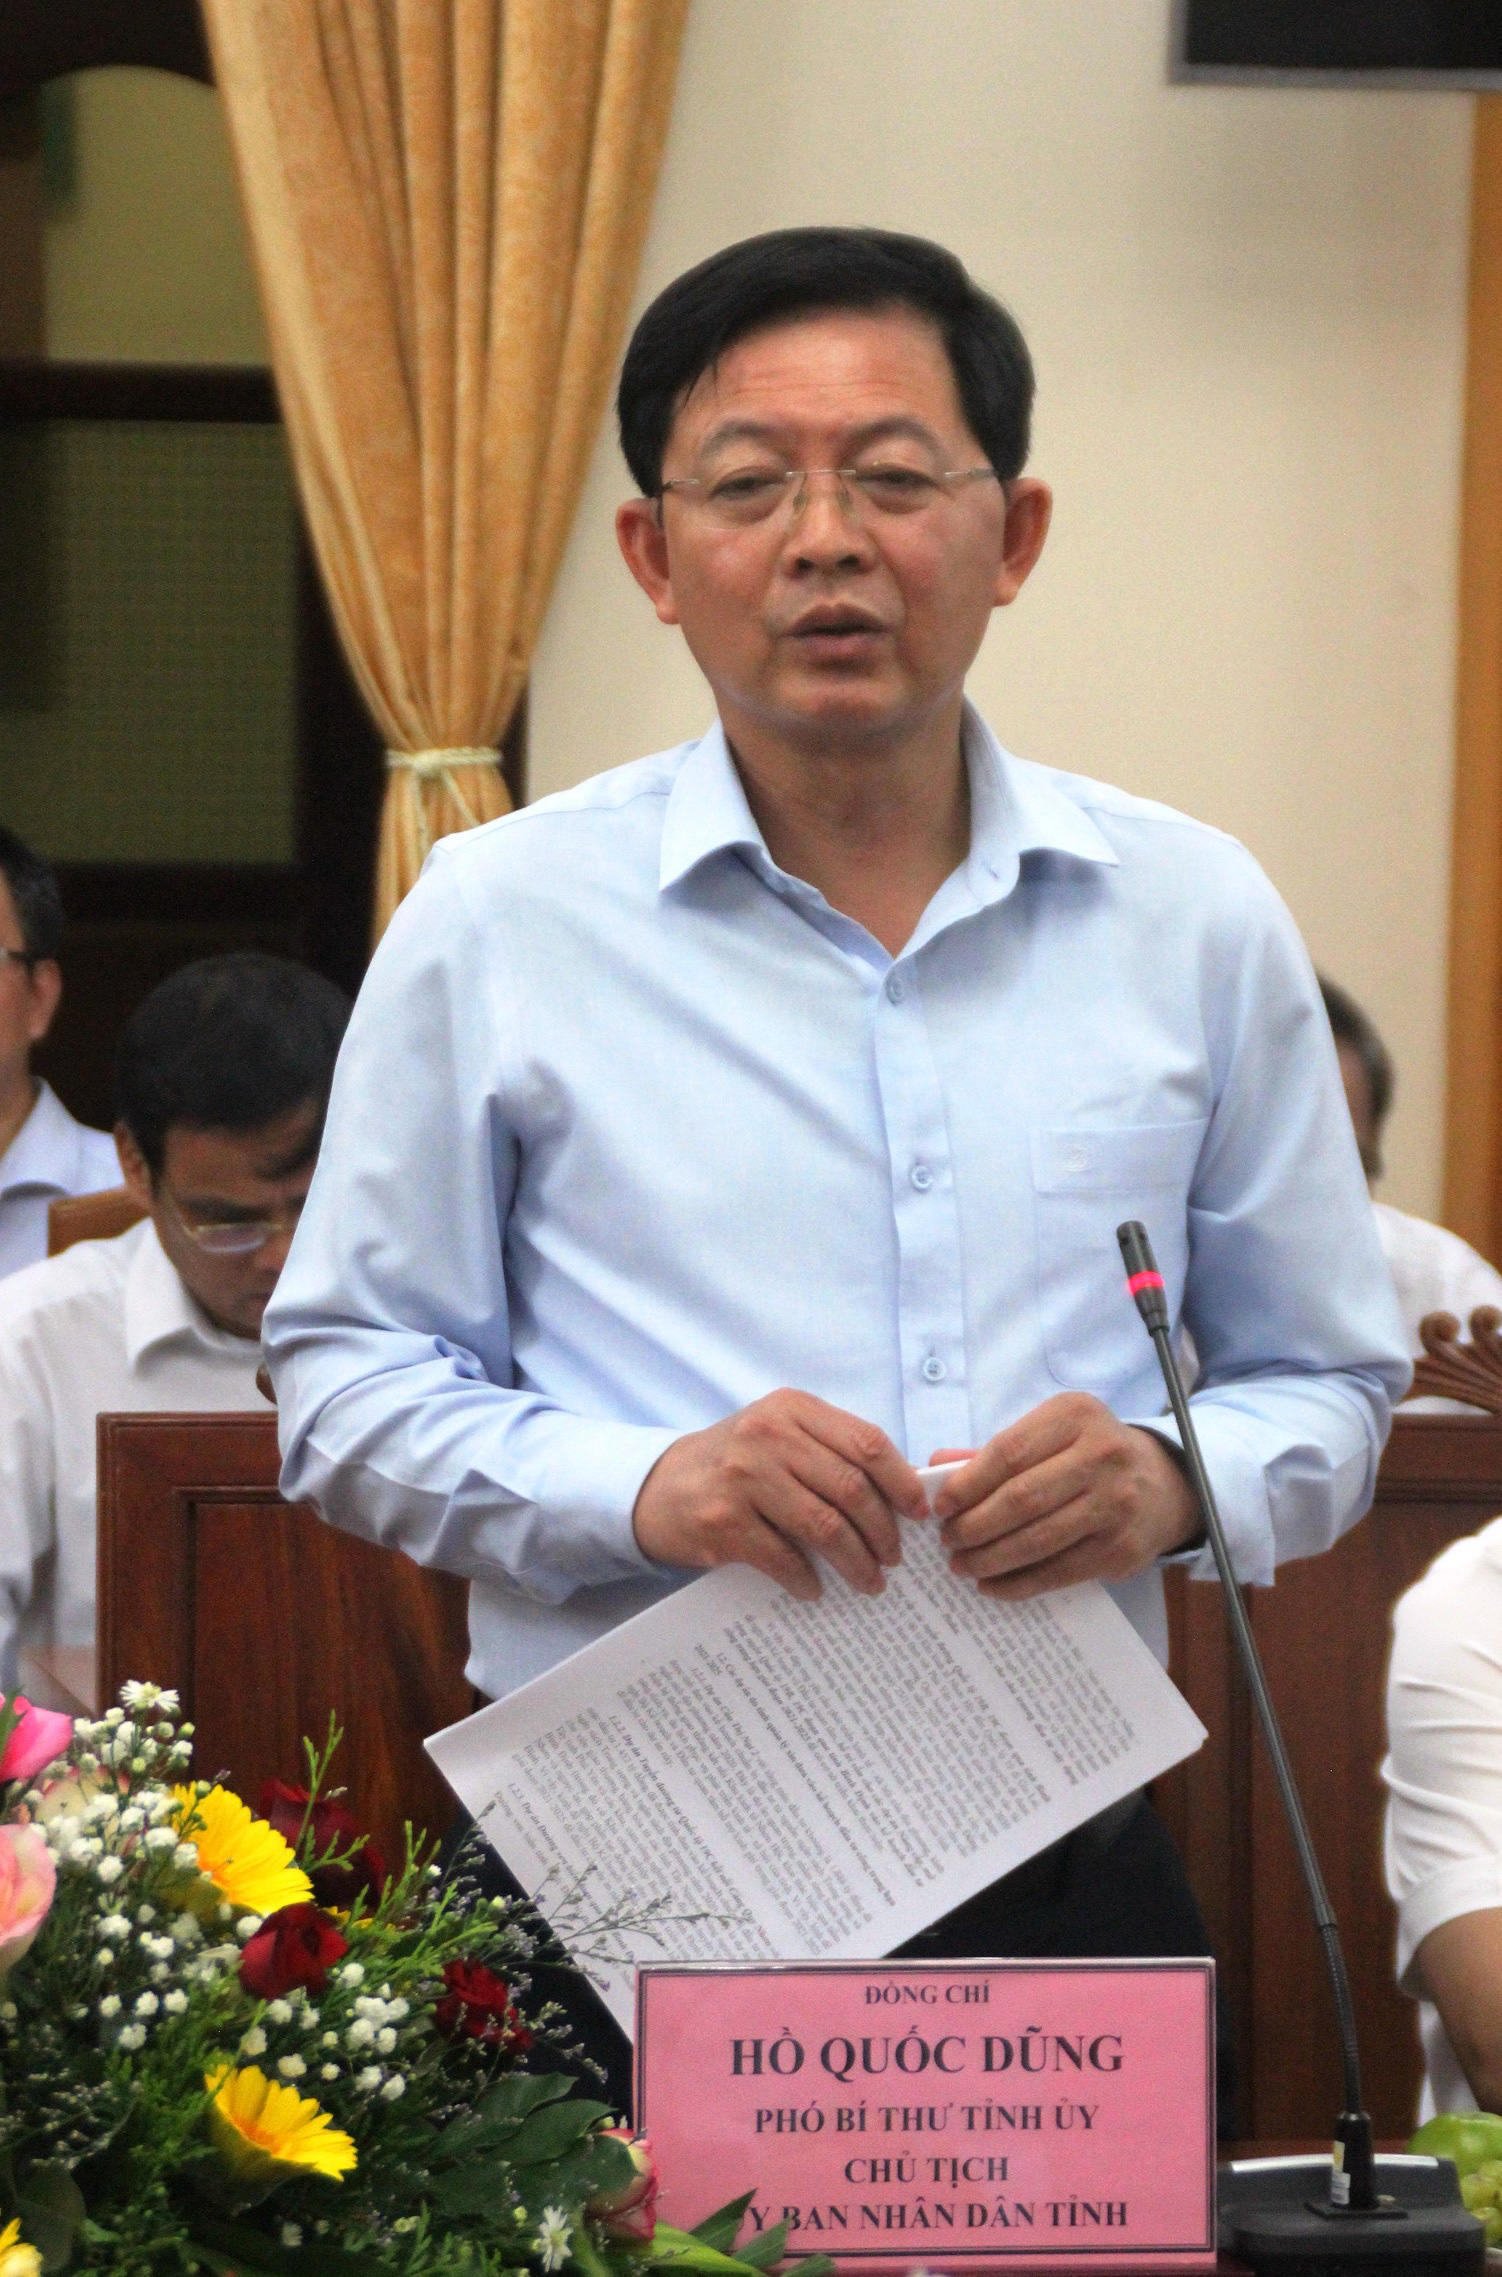 Chủ tịch Bình Định nói lý do muốn xây cầu nghìn tỷ bắc qua đầm Thị Nại(!) - Ảnh 1.